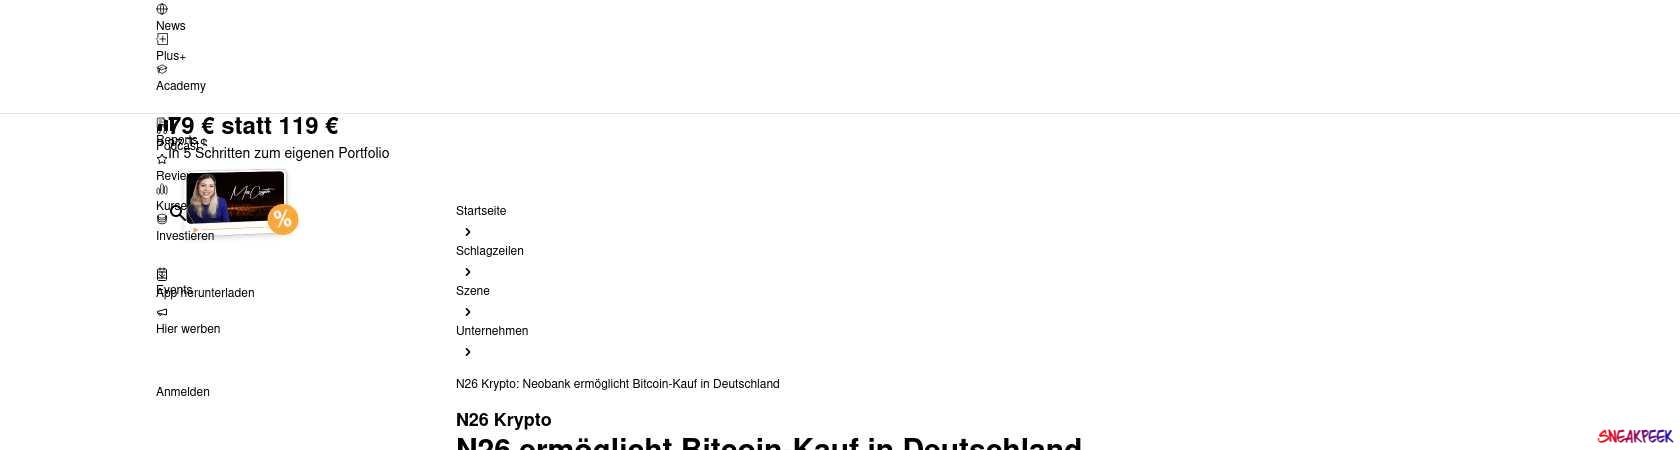 Read the full Article:  ⭲ N26 Krypto: Neobank ermöglicht Bitcoin-Kauf in Deutschland